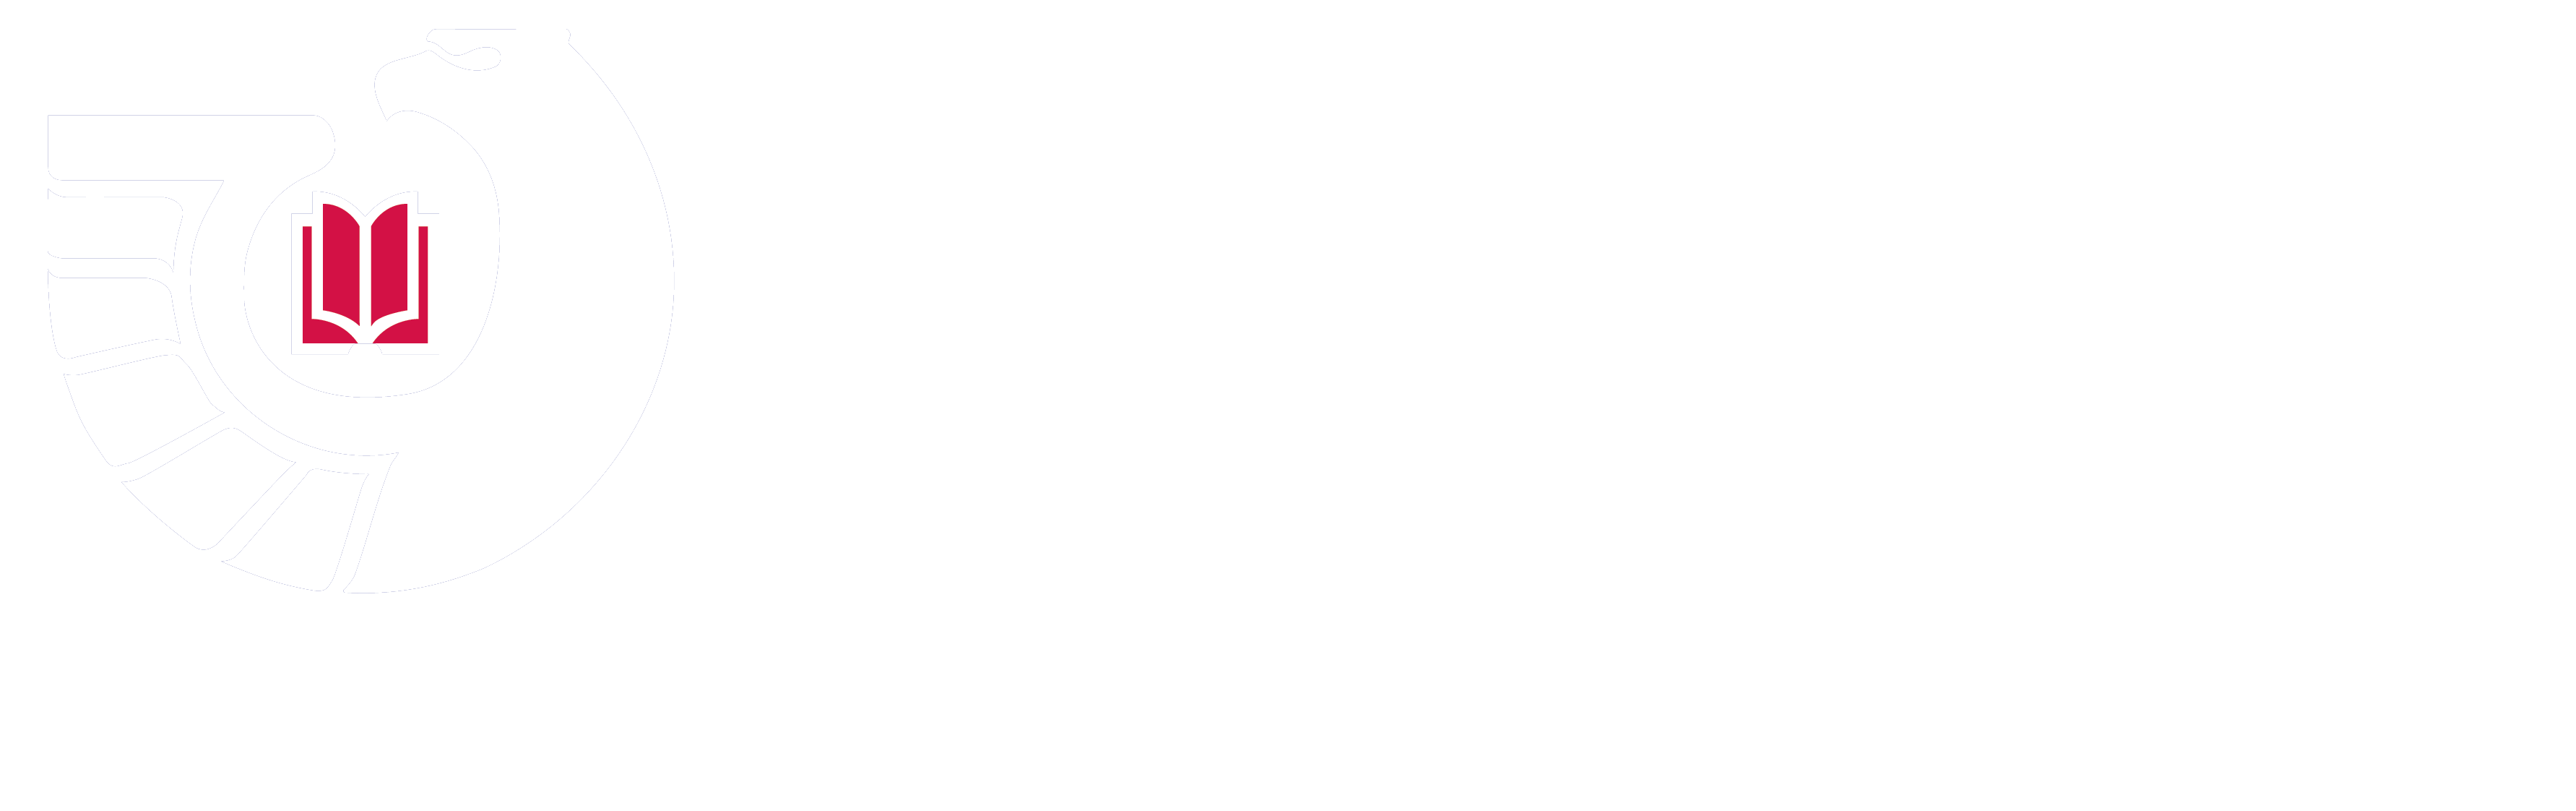 联邦图书馆存款计划标志